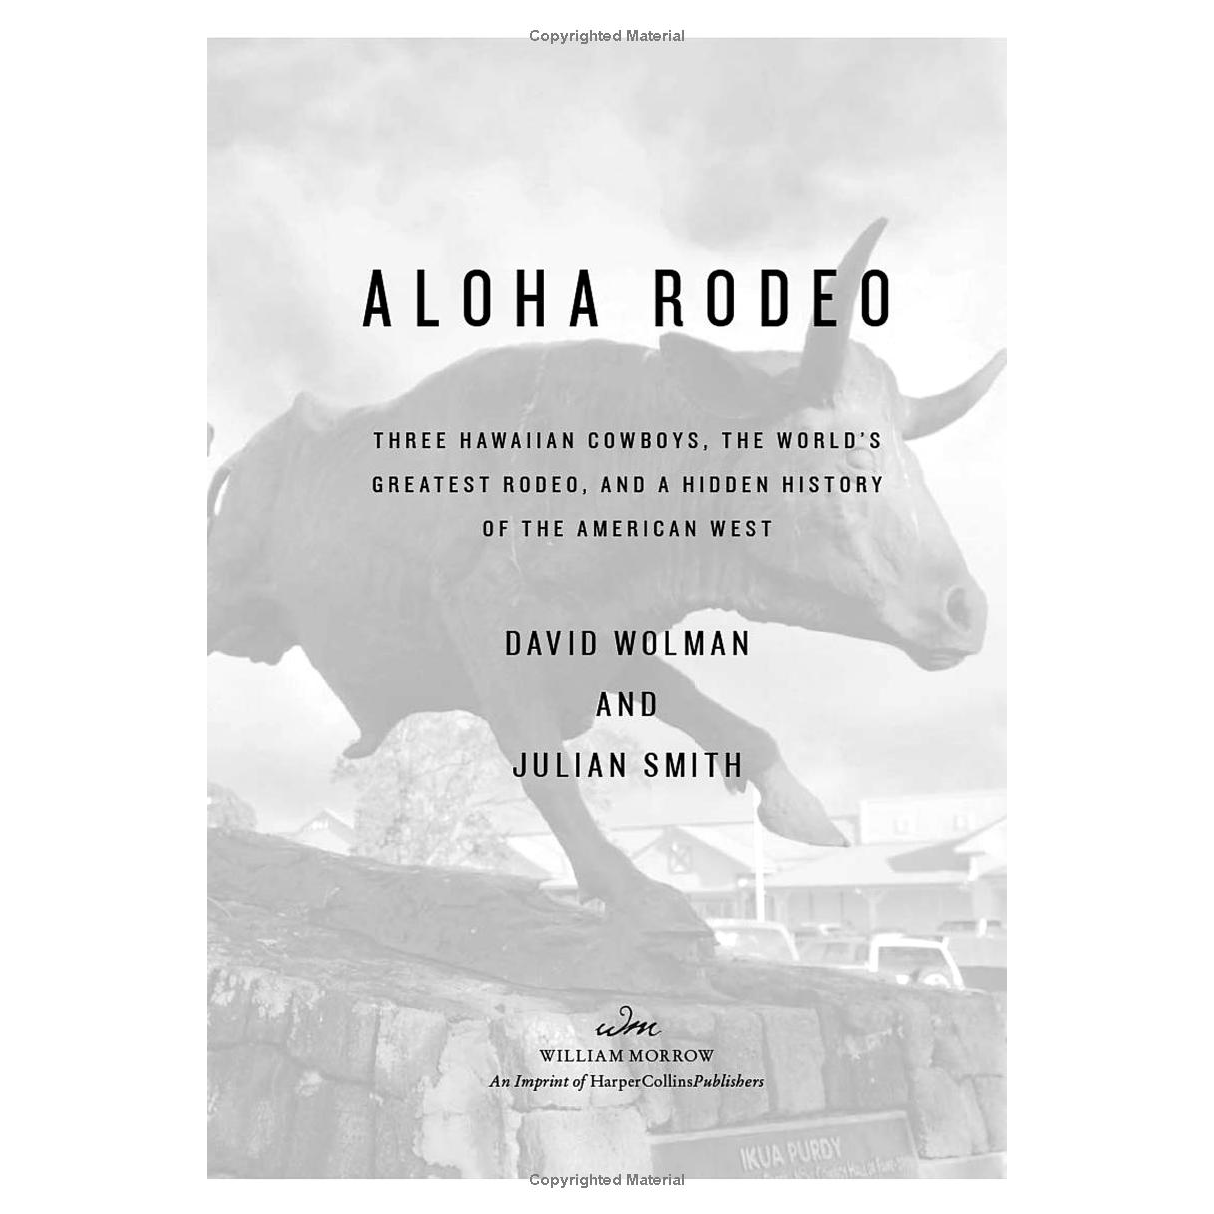 Aloha Rodeo by David Wolman and Julian Smith